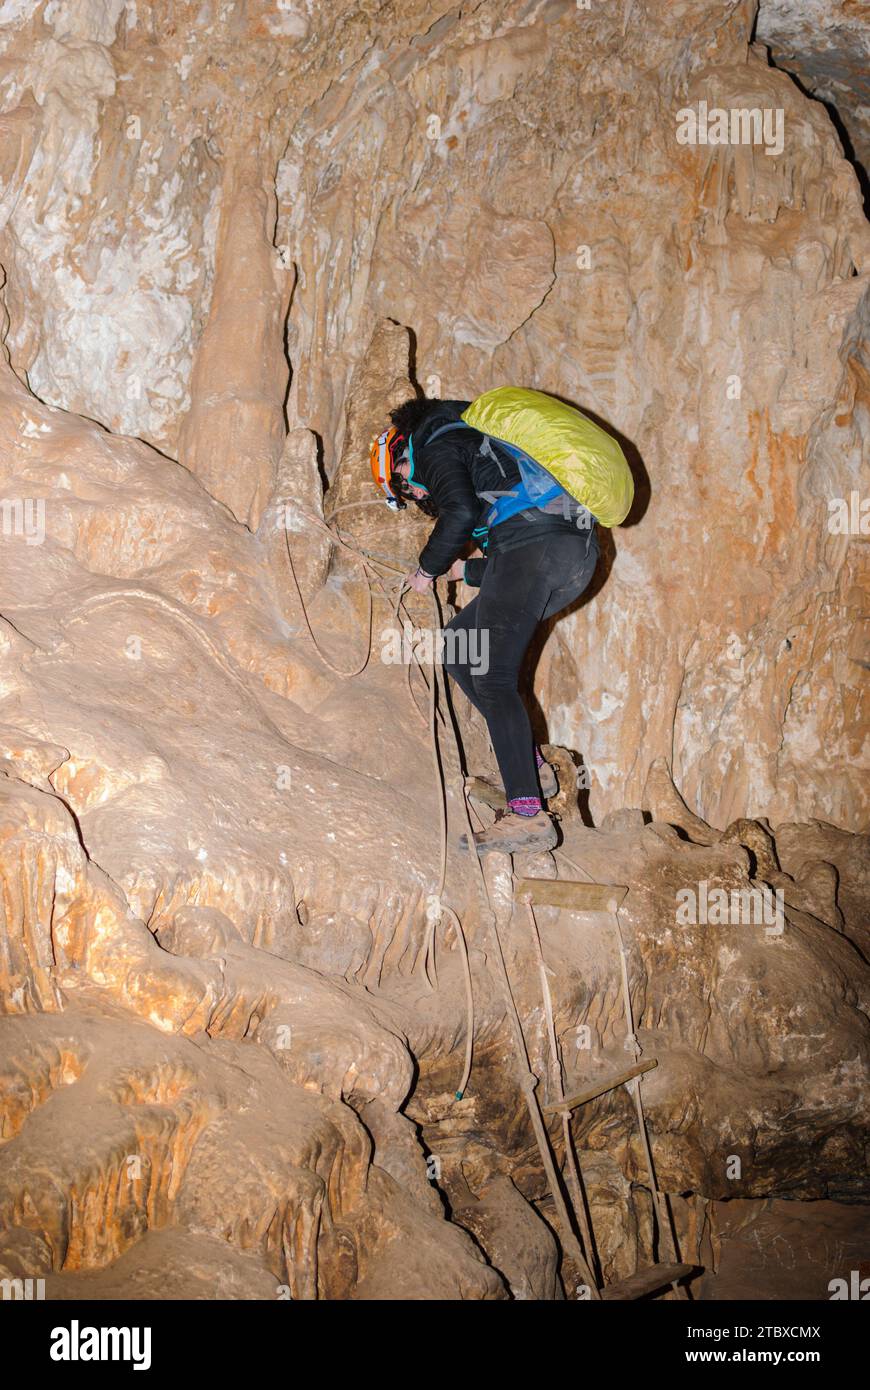 Jeune femme spelunking dans une grotte. Concept de sport féminin extrême. Banque D'Images